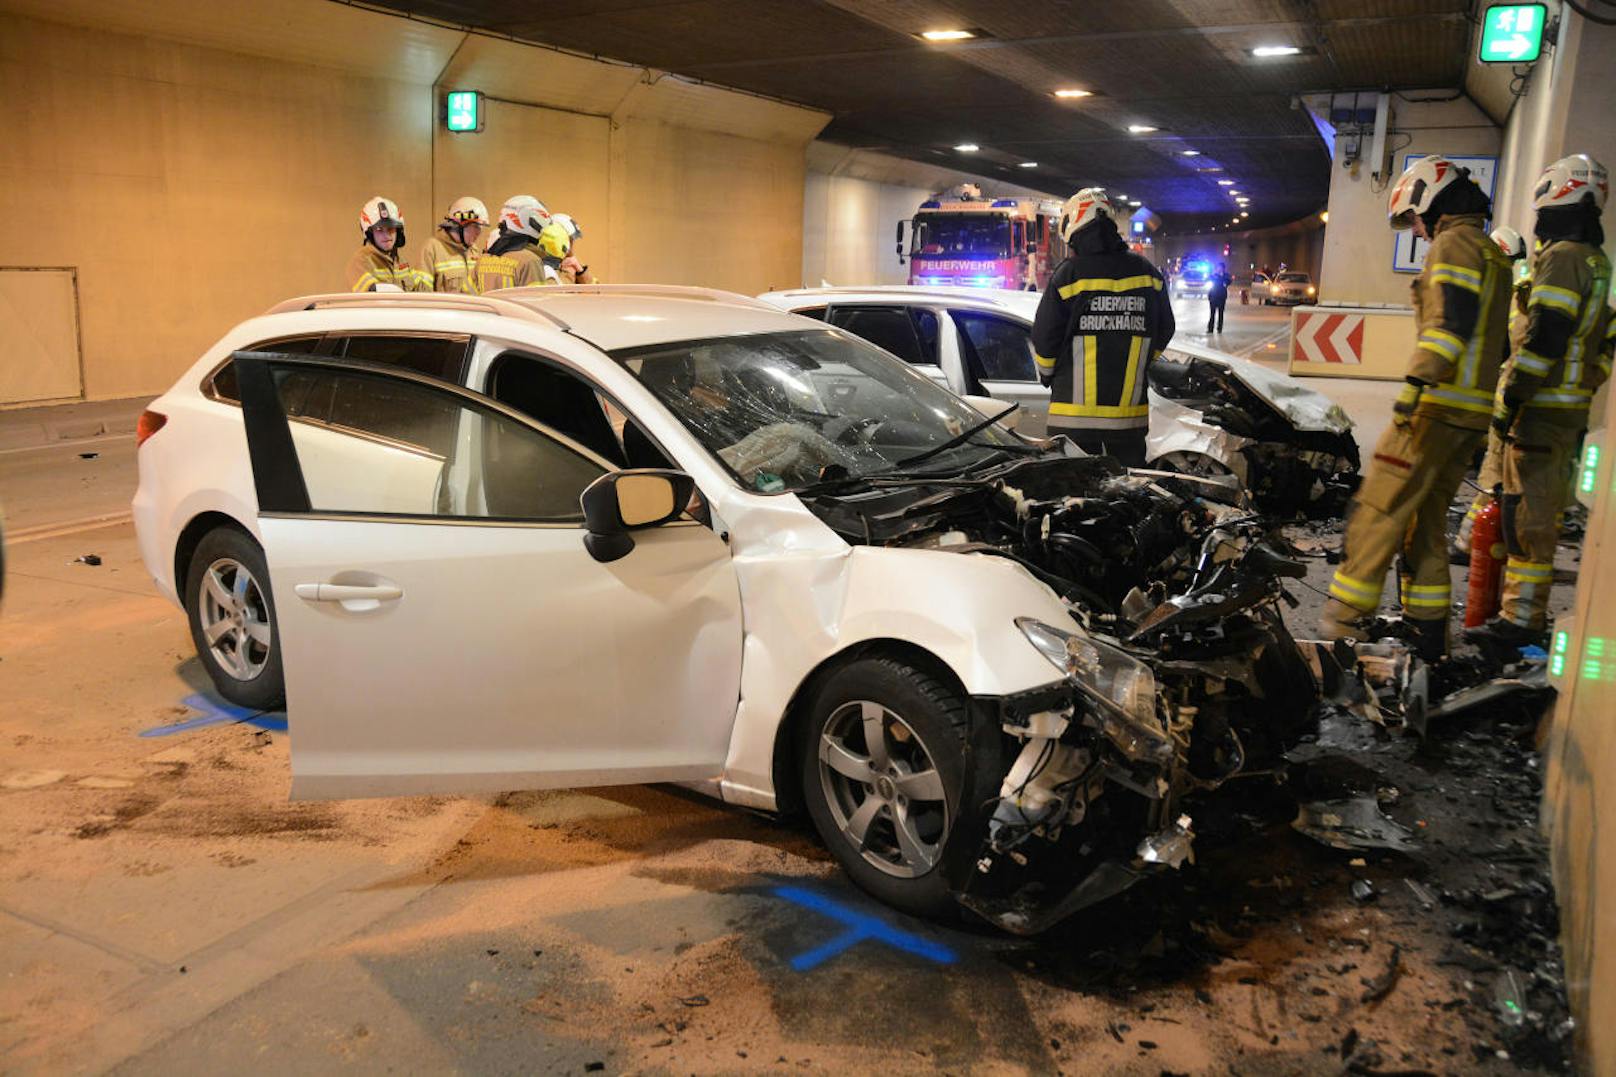 Drei Fahrzeuge kolliderten dabei frontal miteinander. Bilder zeigen einen schwer beschädigten Audi A6 und einen förmlich zerrissenen Mazda 6.